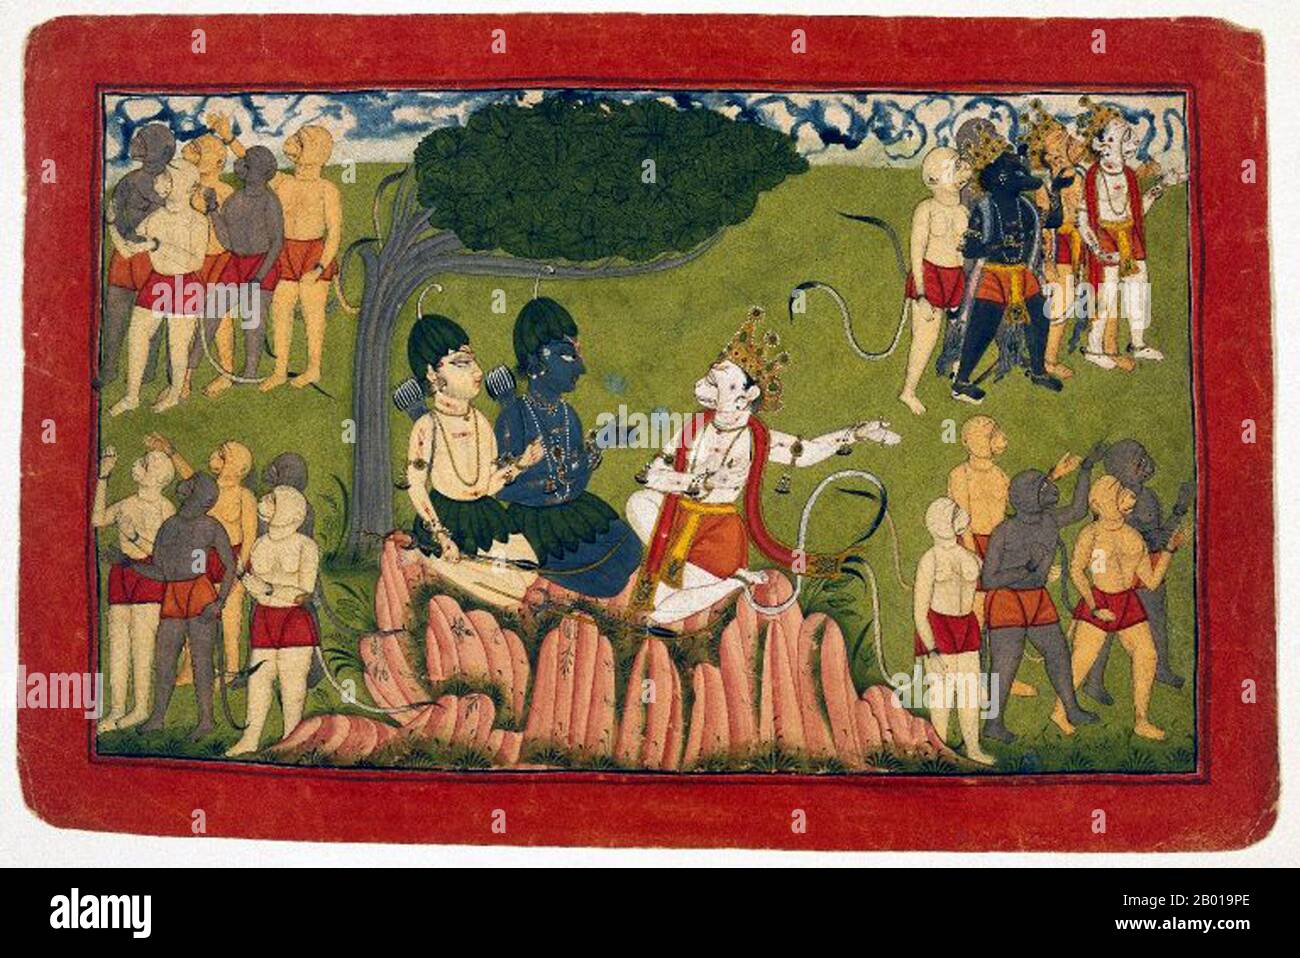 India: Rama y Lakshmana confer con el rey Sugriva, el rey mono de Kishkinha, sobre la búsqueda de Sita. Gouache y oro sobre papel de una serie Ramayana dispersa, c. 1690-1720. Kishkindha fue el Reino de los Monos del rey Vanara (mono) Sugriva, el hermano menor de Bali, en la épica india Ramayana. Este fue el reino donde gobernó con la ayuda de su ministro, Hanuman. Este reino se identifica como las regiones alrededor del río Tungabhadra (entonces conocido como Pampa Saras) cerca de Hampi en Karnataka. Foto de stock